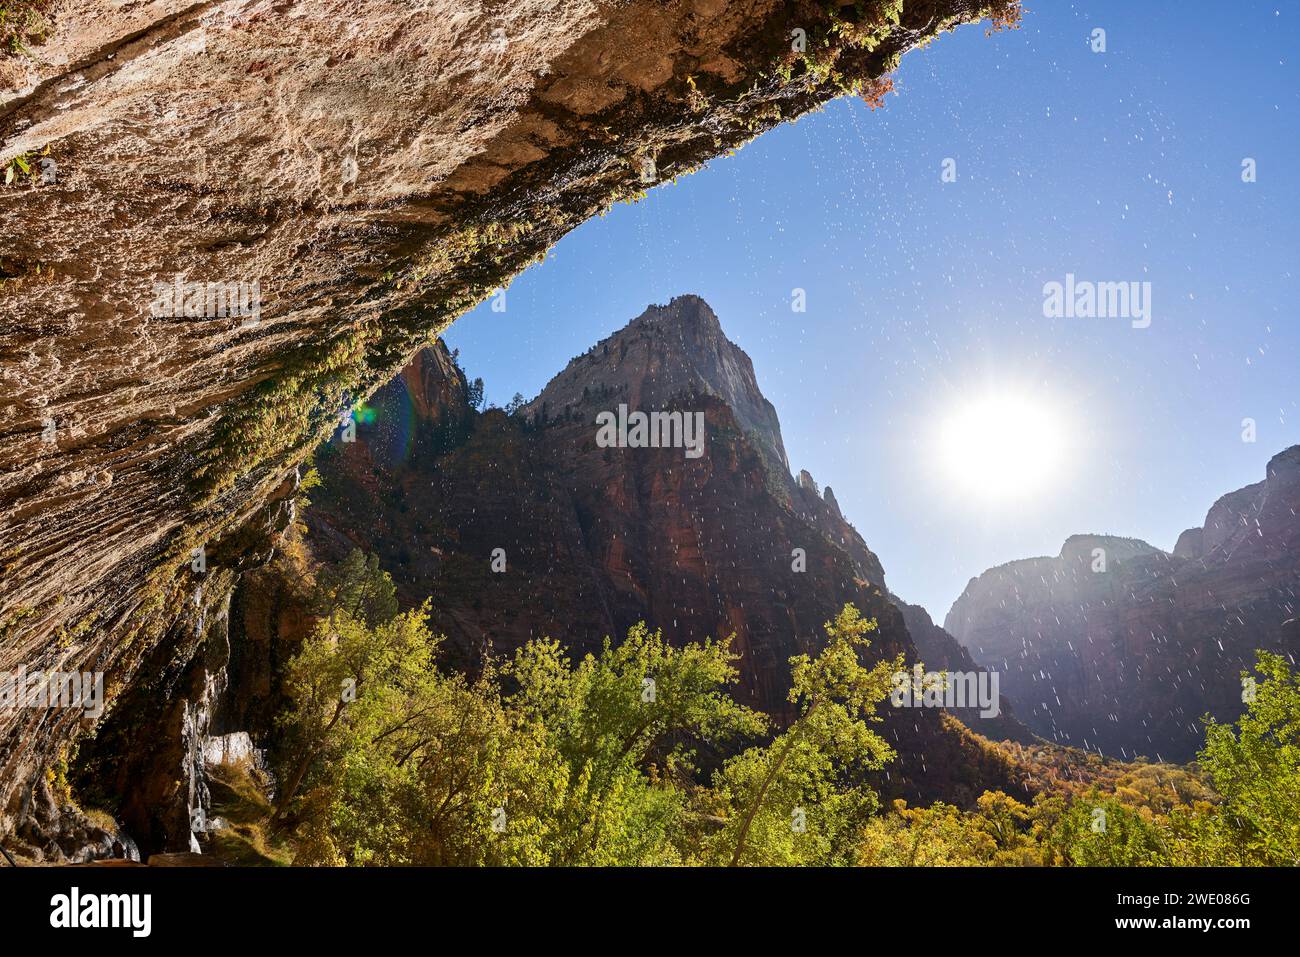 Gocce d'acqua da una sporgenza di roccia. Il sole basso brilla sul canyon, retroilluminando gli alberi autunnali e le goccioline d'acqua. La valle è circondata da roccia pe Foto Stock